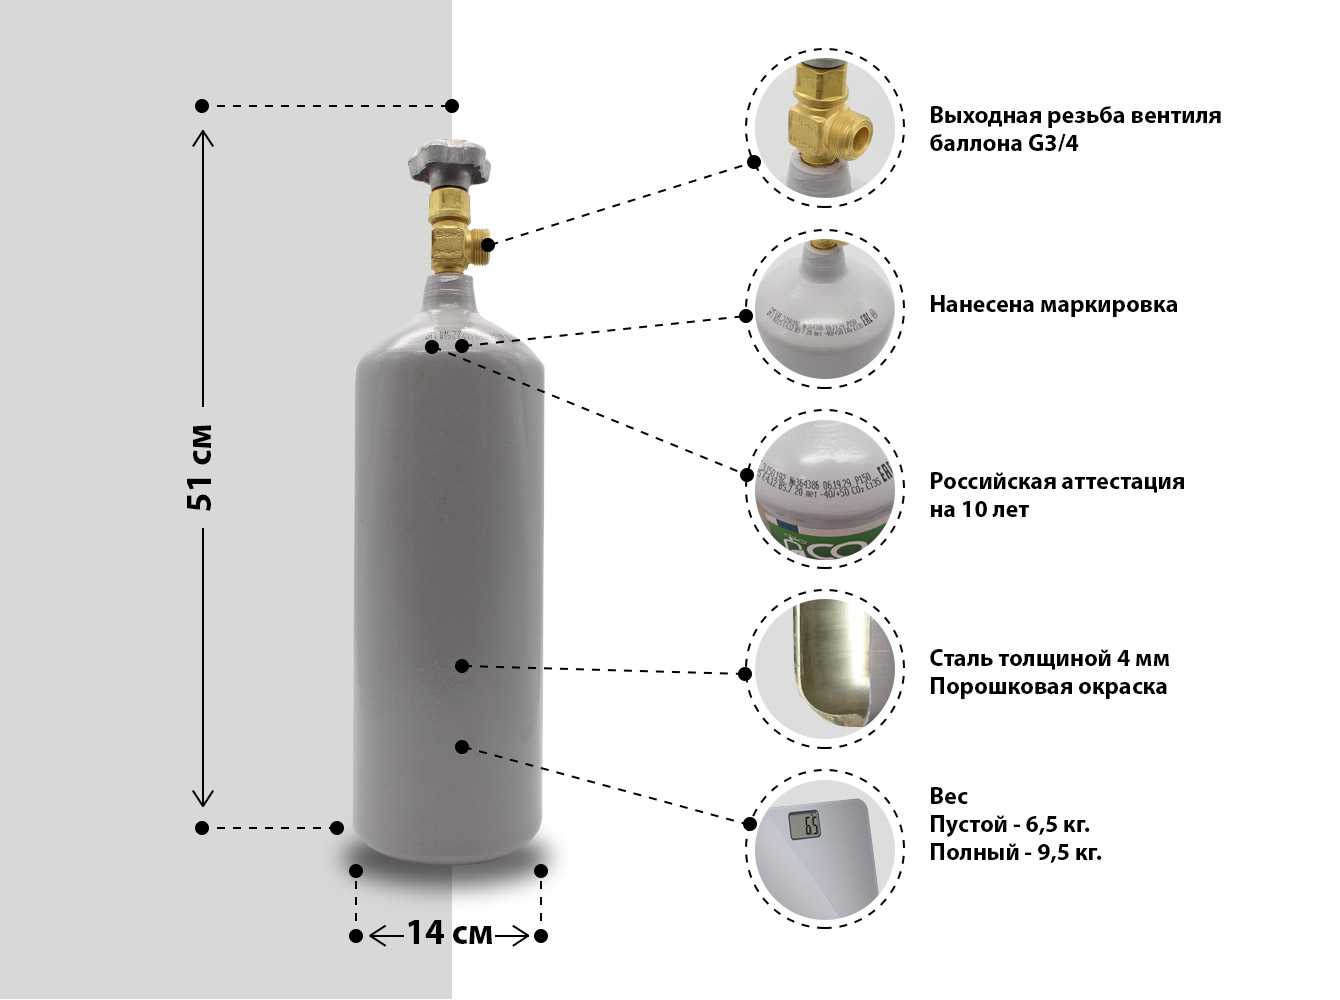 Характеристики типовых 50 литровых газовых баллонов — конструкция, габариты и вес баллона